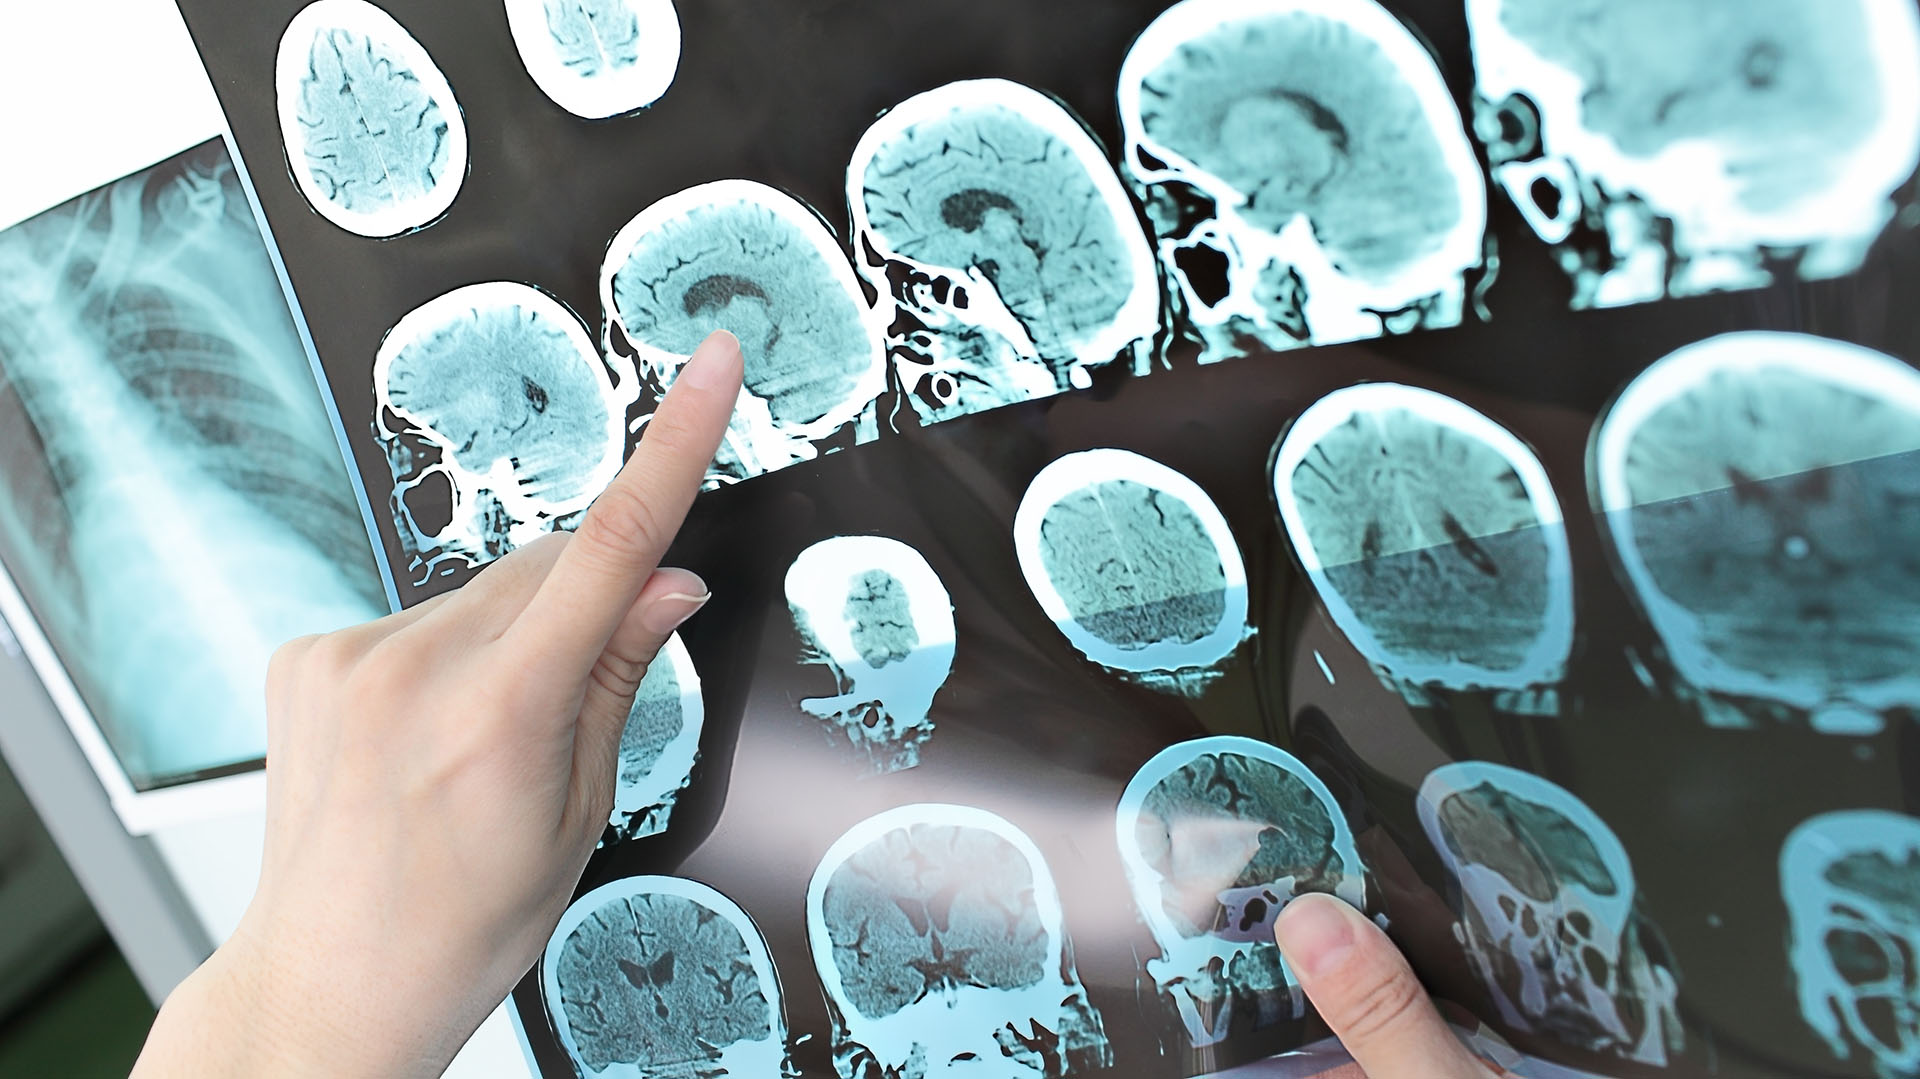 Generalmente se presenta con brotes que pueden afectar a cualquier área del cerebro (Getty Images)